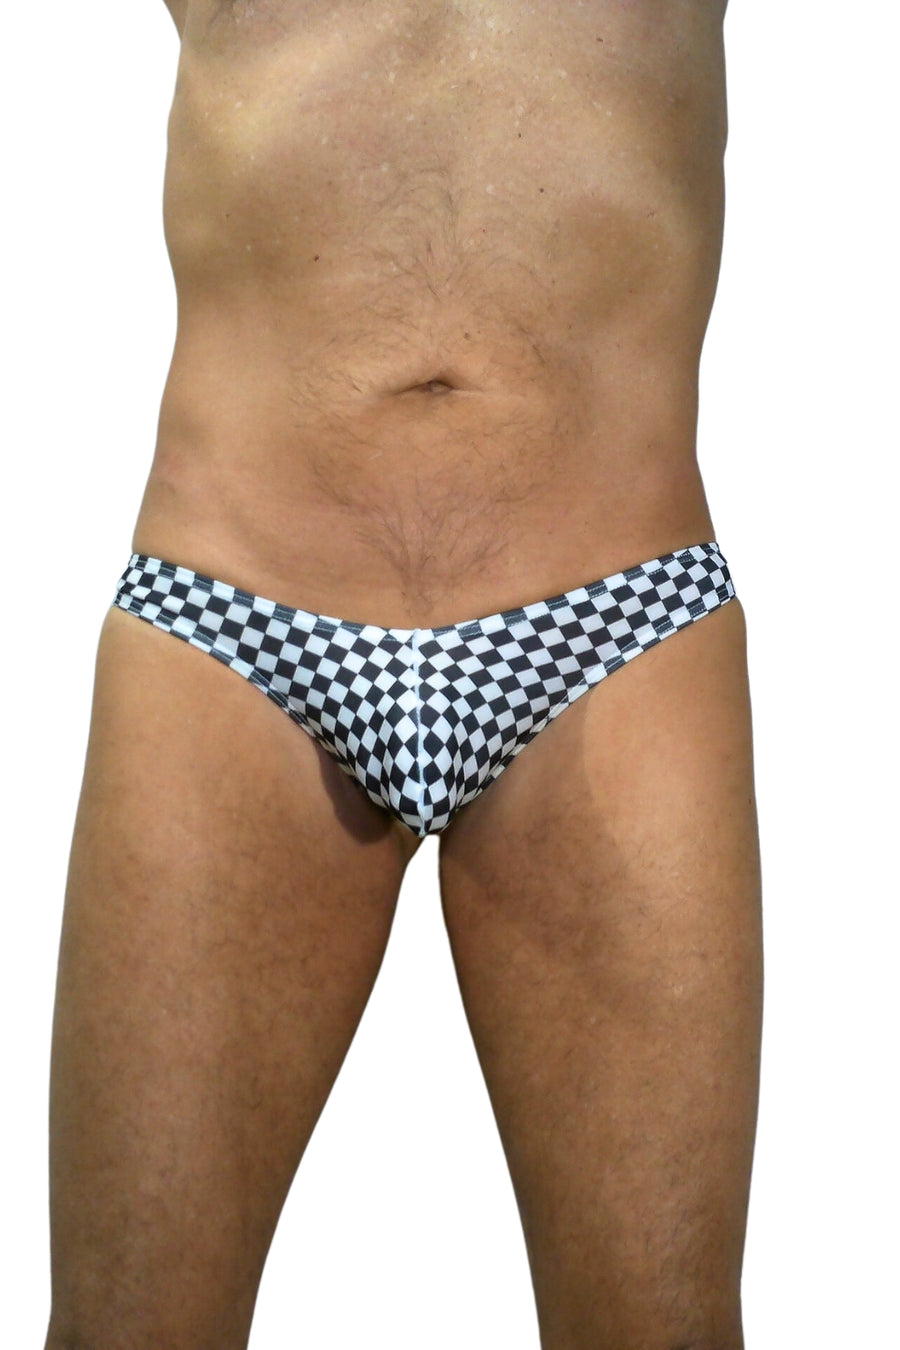 BfM Mens Checker Print Bulge Pouch Thong Underwear – Bodywear for Men